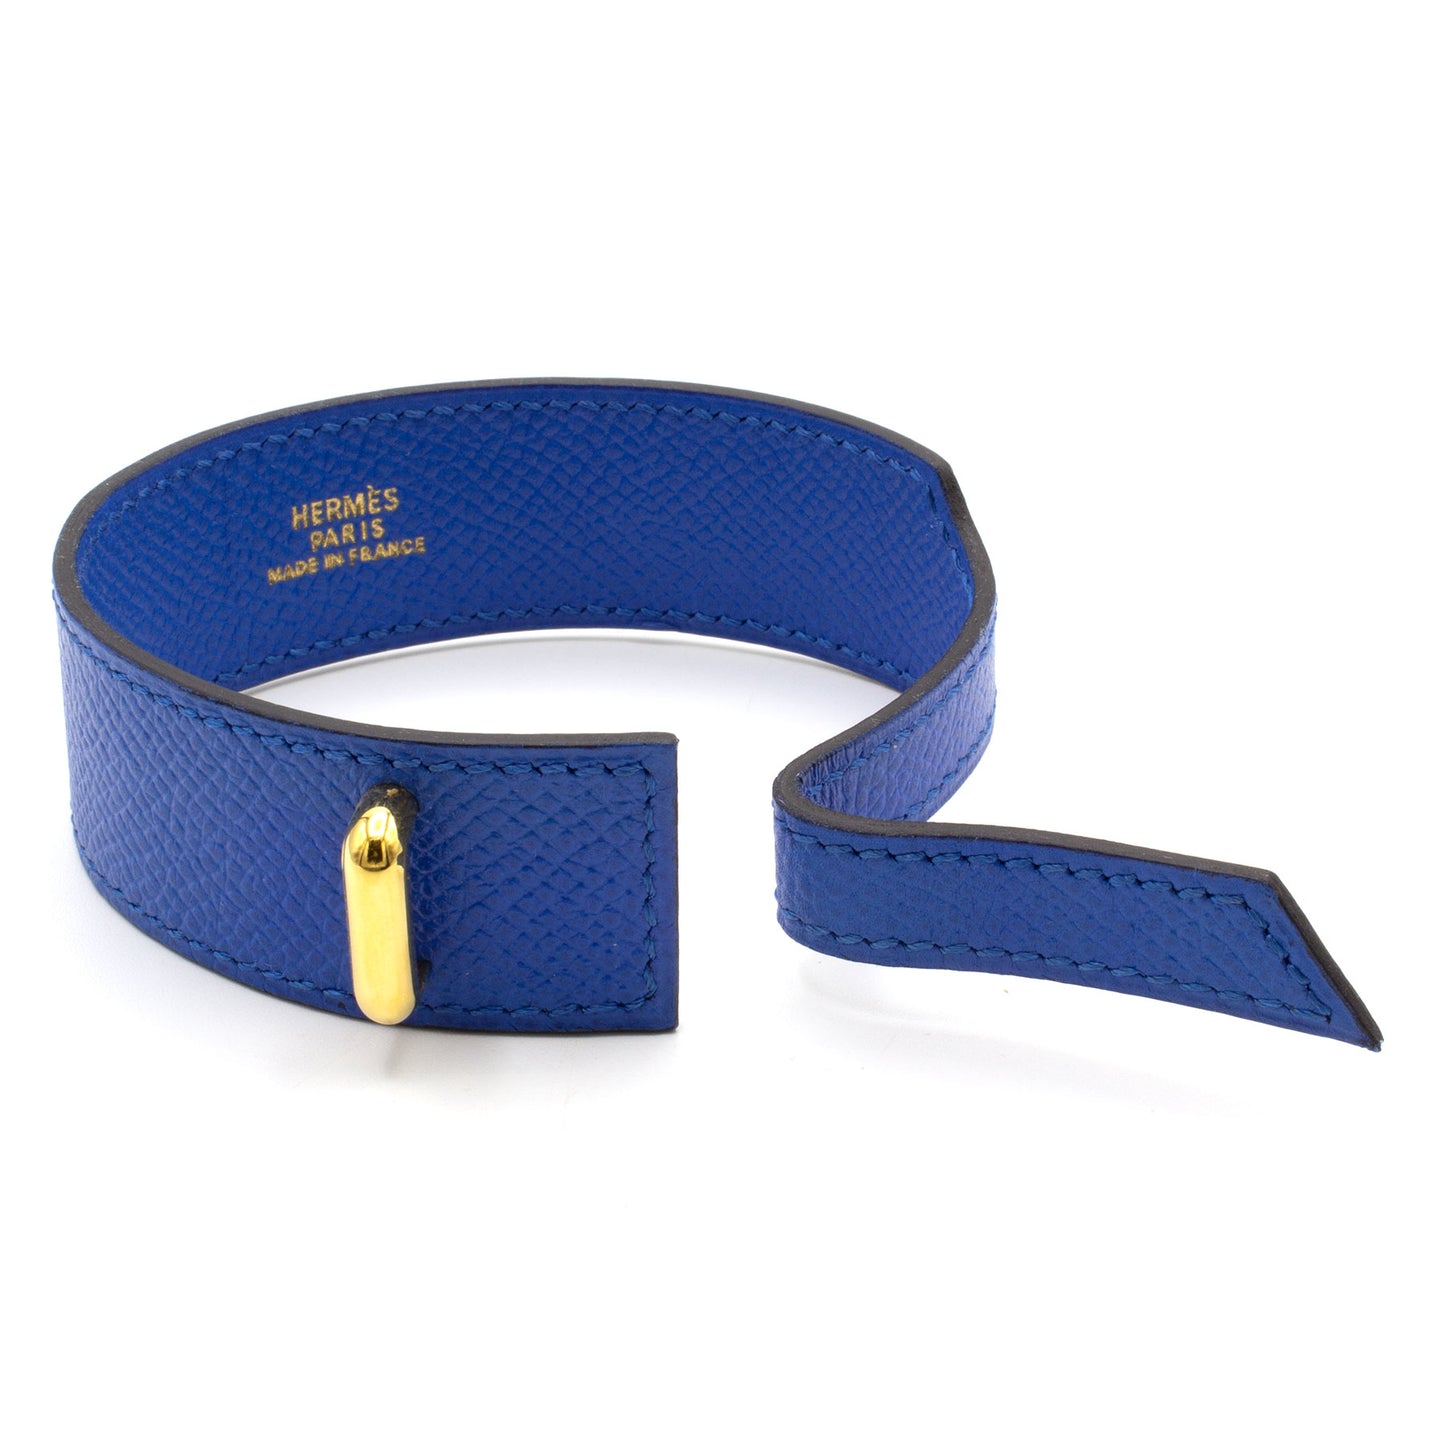 Hermès Artémis blue bracelet